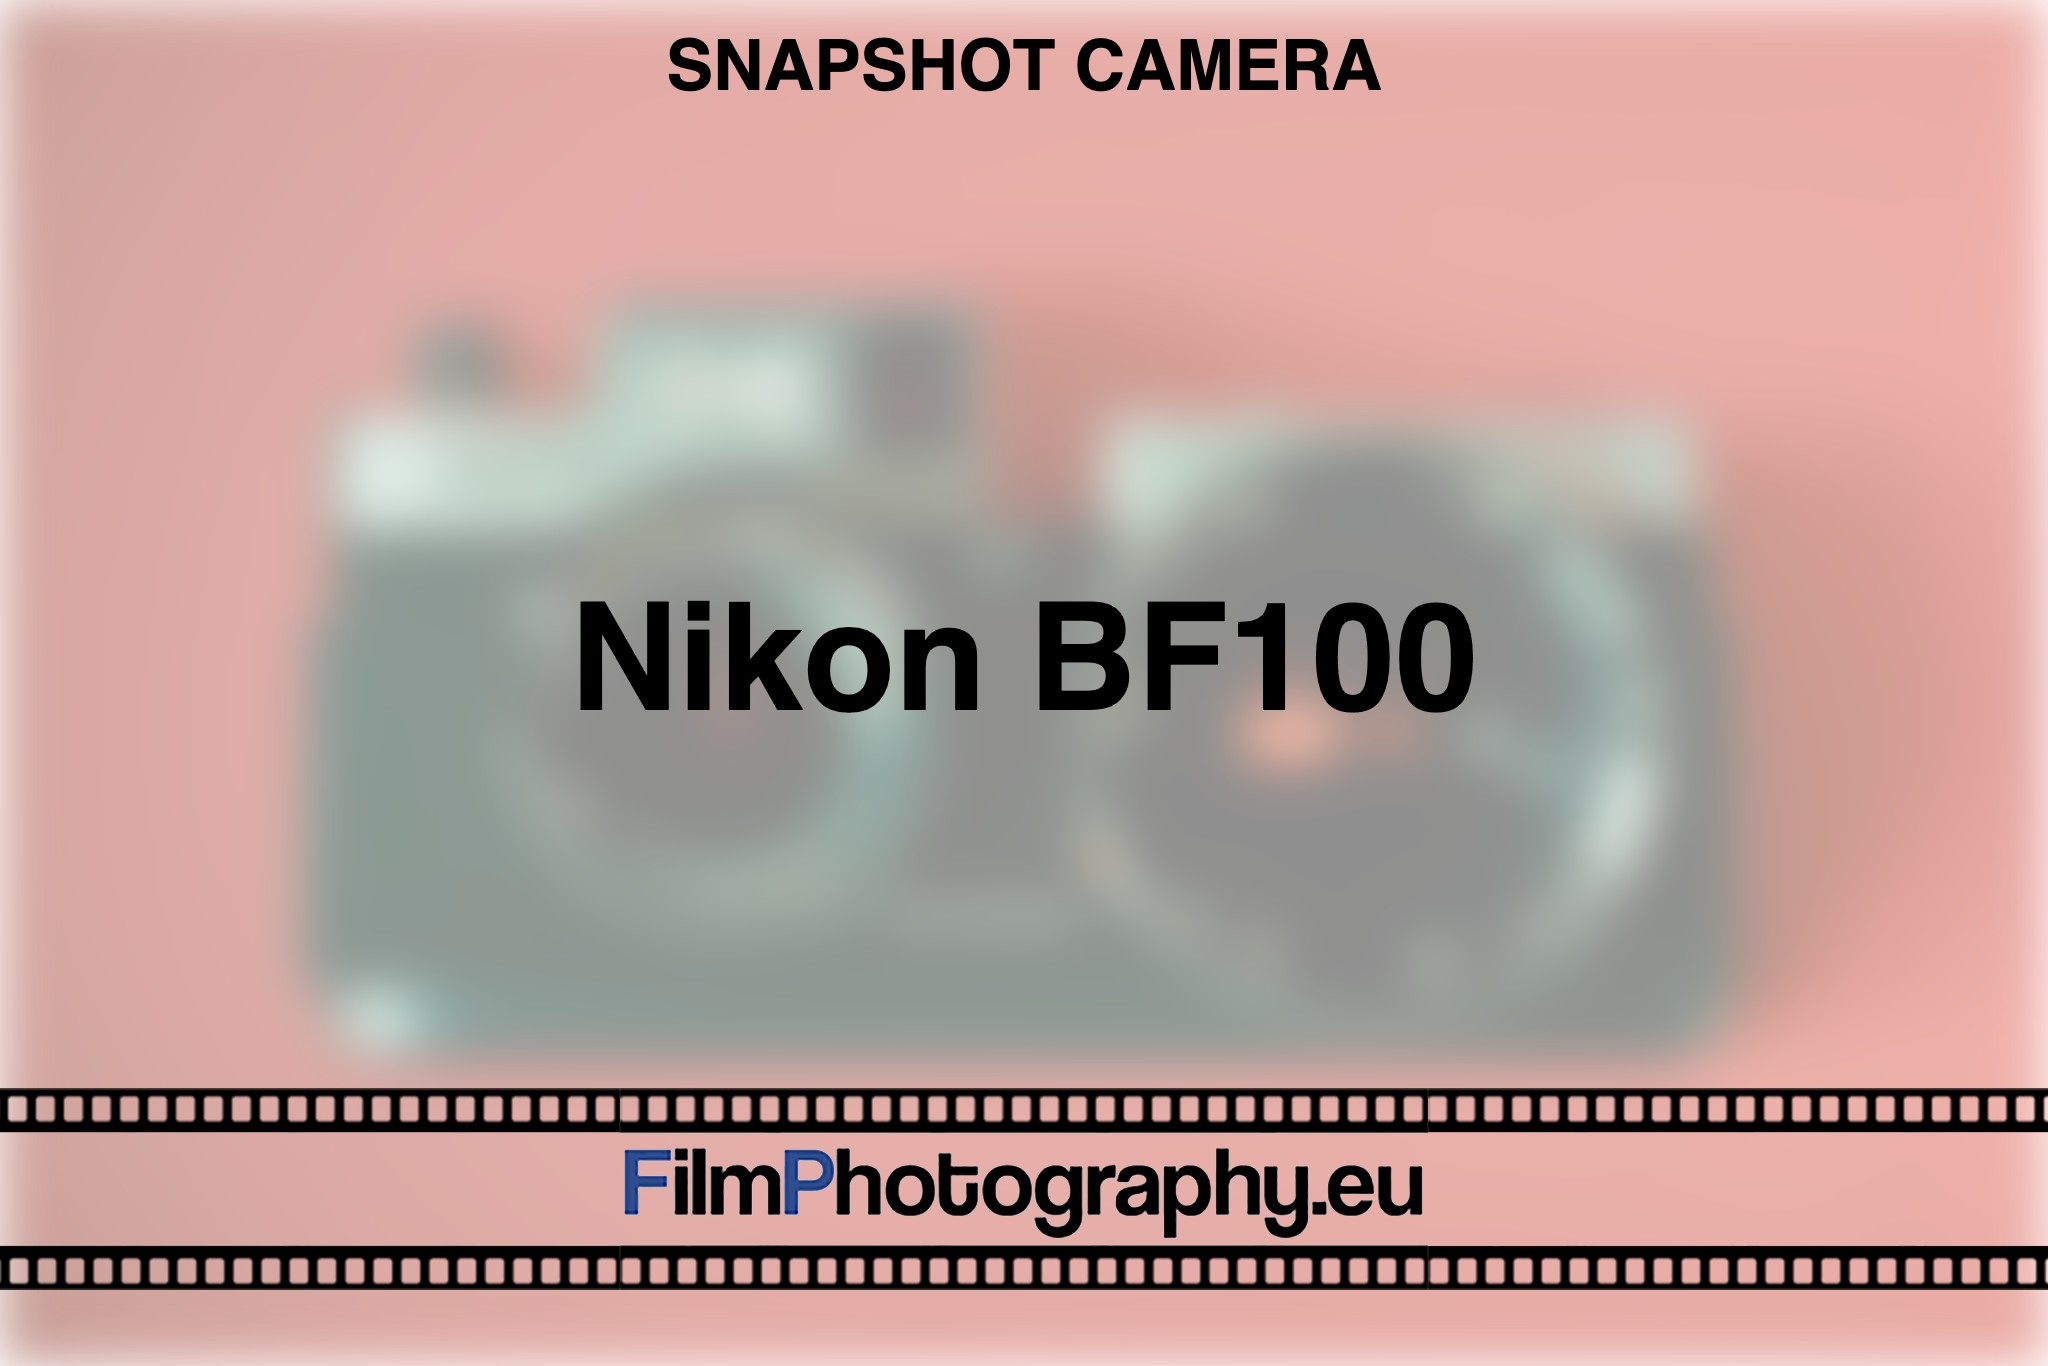 nikon-bf100-snapshot-camera-bnv